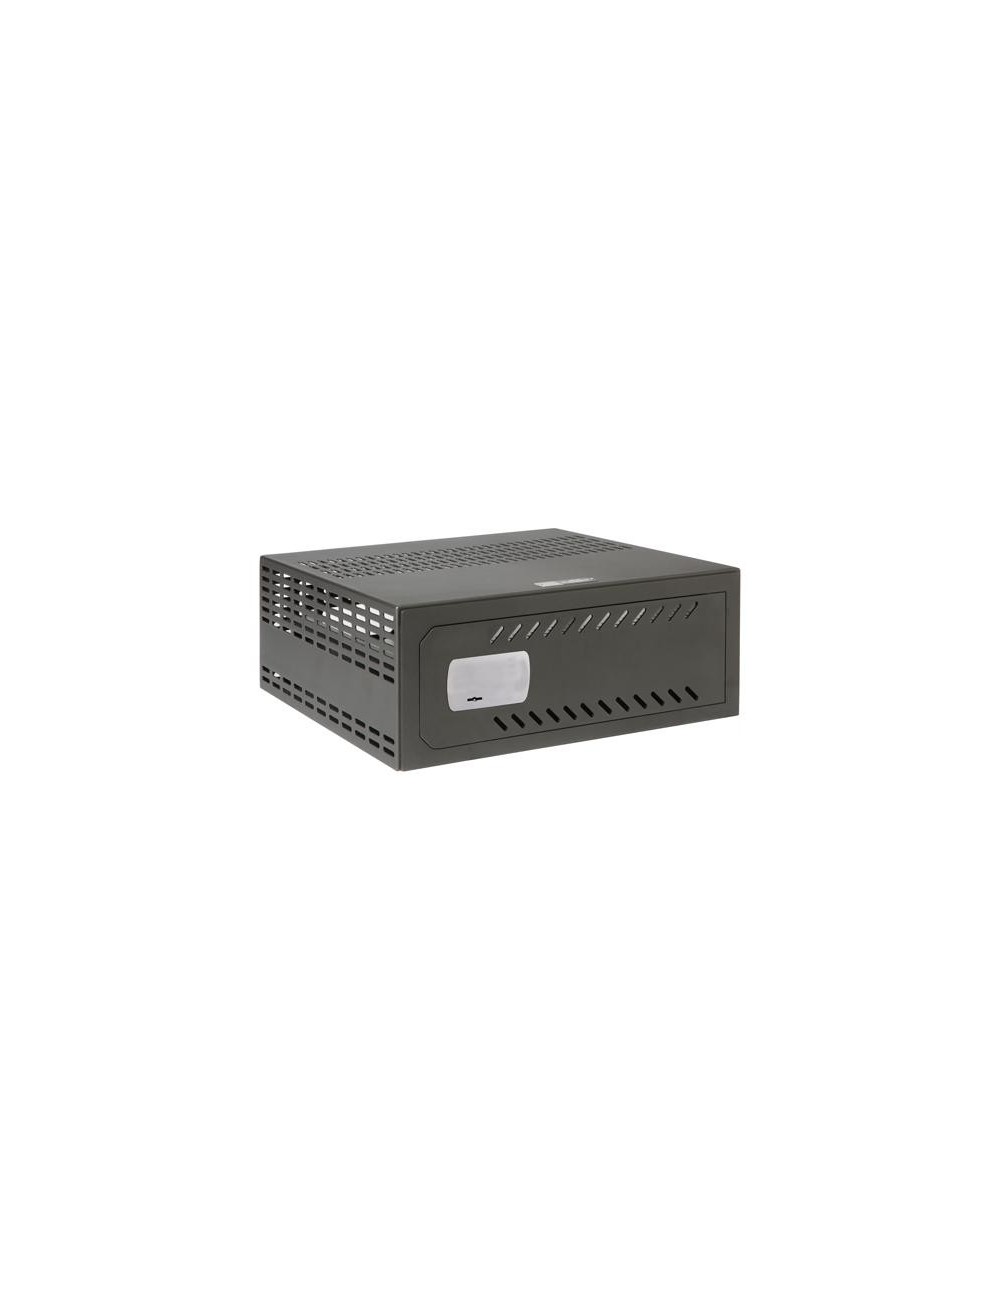 Cassaforte per DVR da 1,5 a 2U rack - Specifico per CCTV - serratura meccanica di sicurezza 